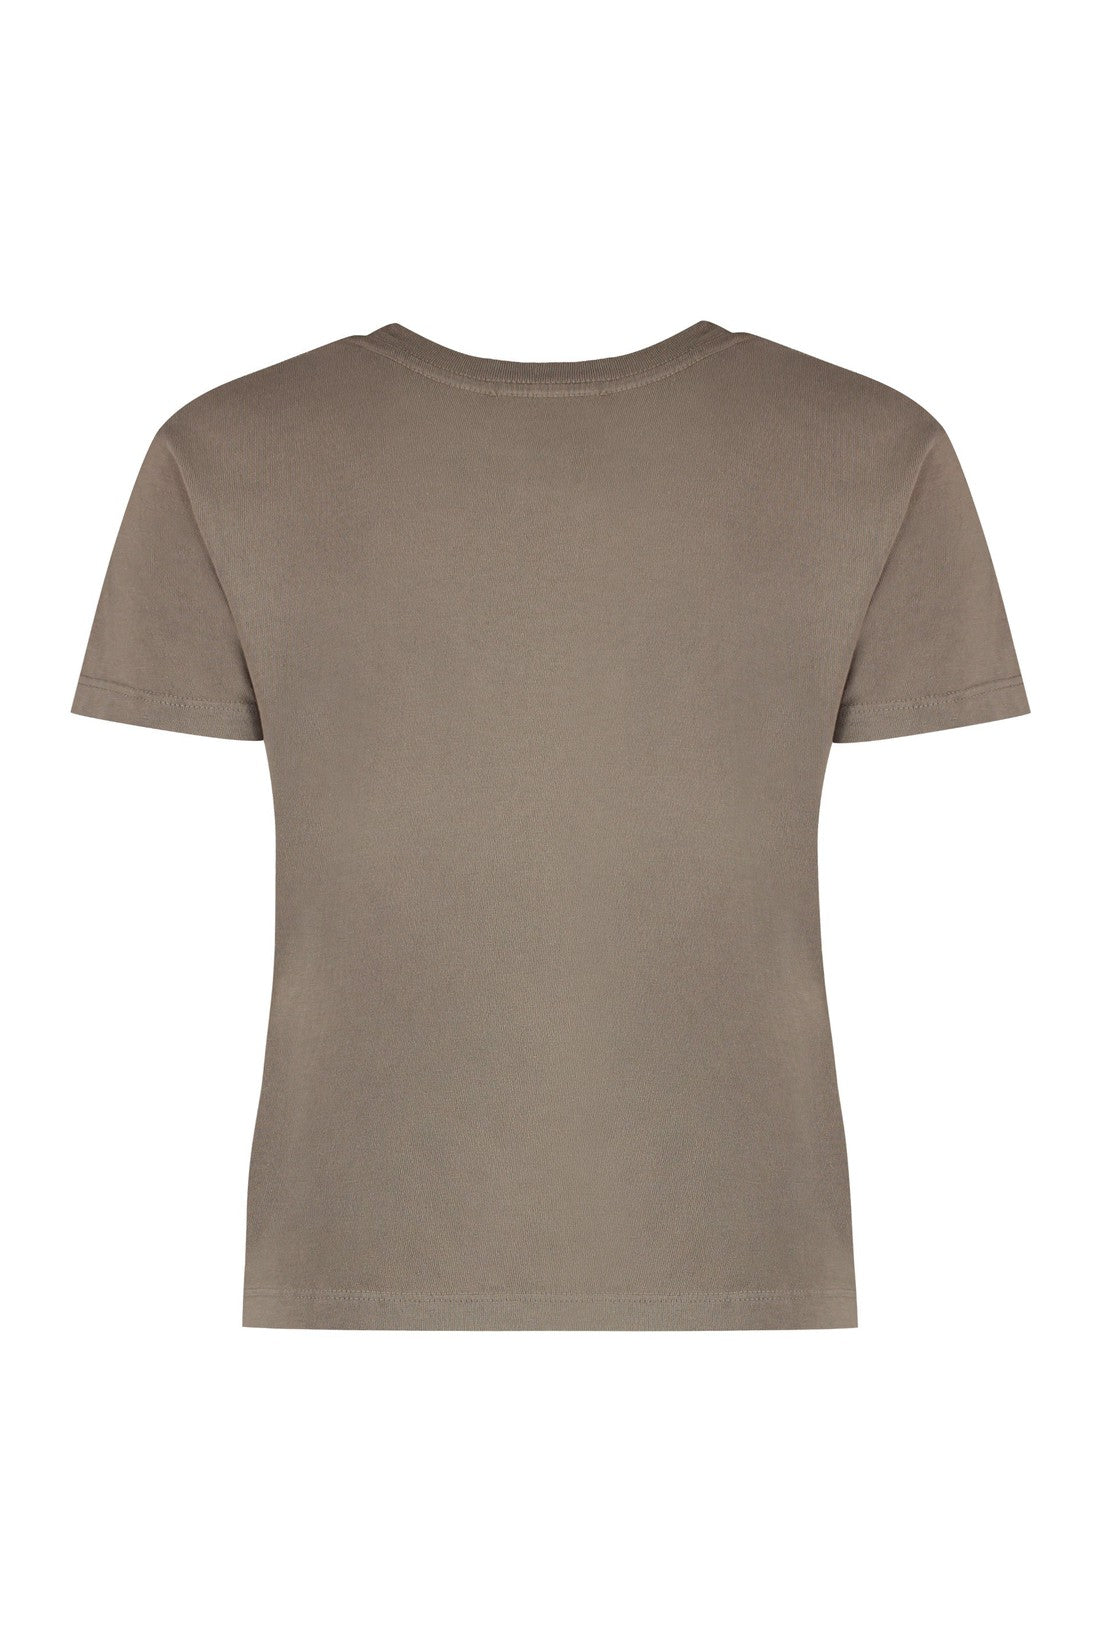 AGOLDE-OUTLET-SALE-Cotton crew-neck T-shirt-ARCHIVIST